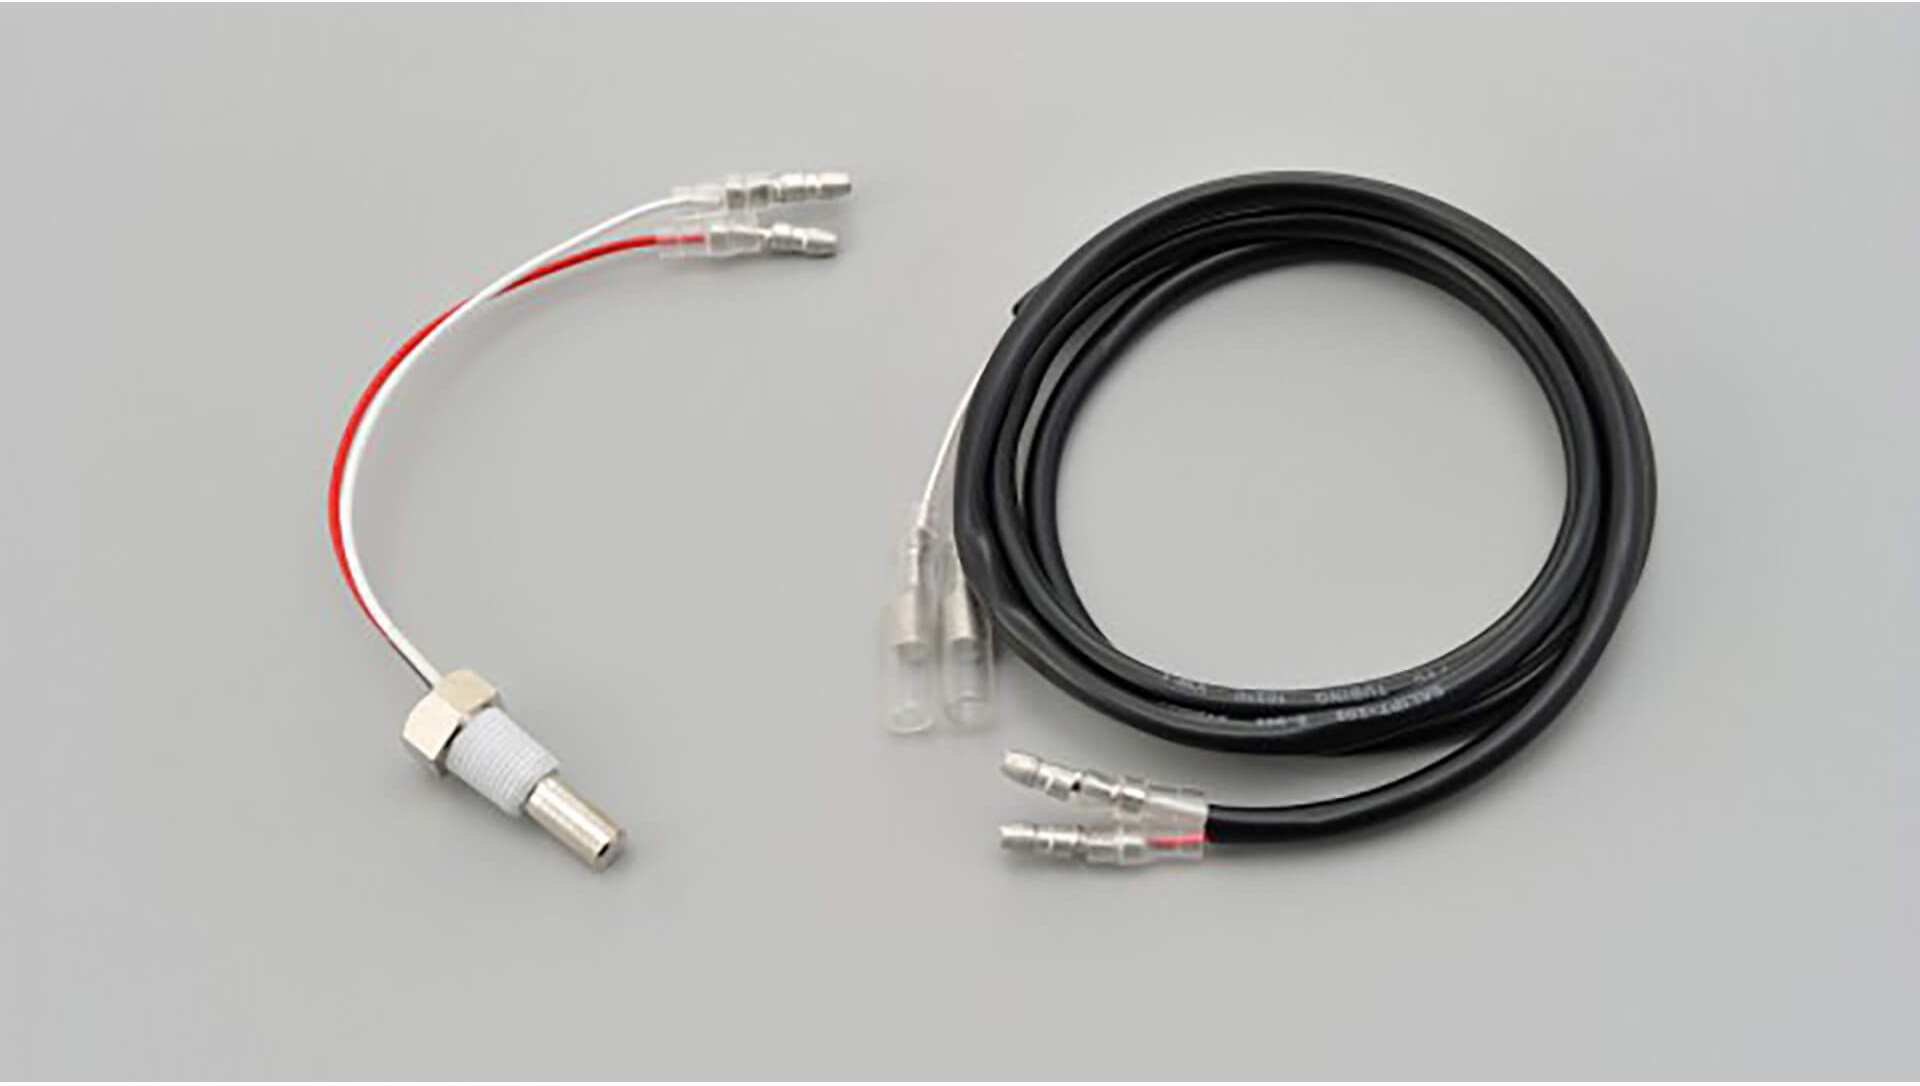 DAYTONA Corp. Temperatursensor mit 1/8 Zoll Gewinde und externem Kabel für VELONA Instrumente